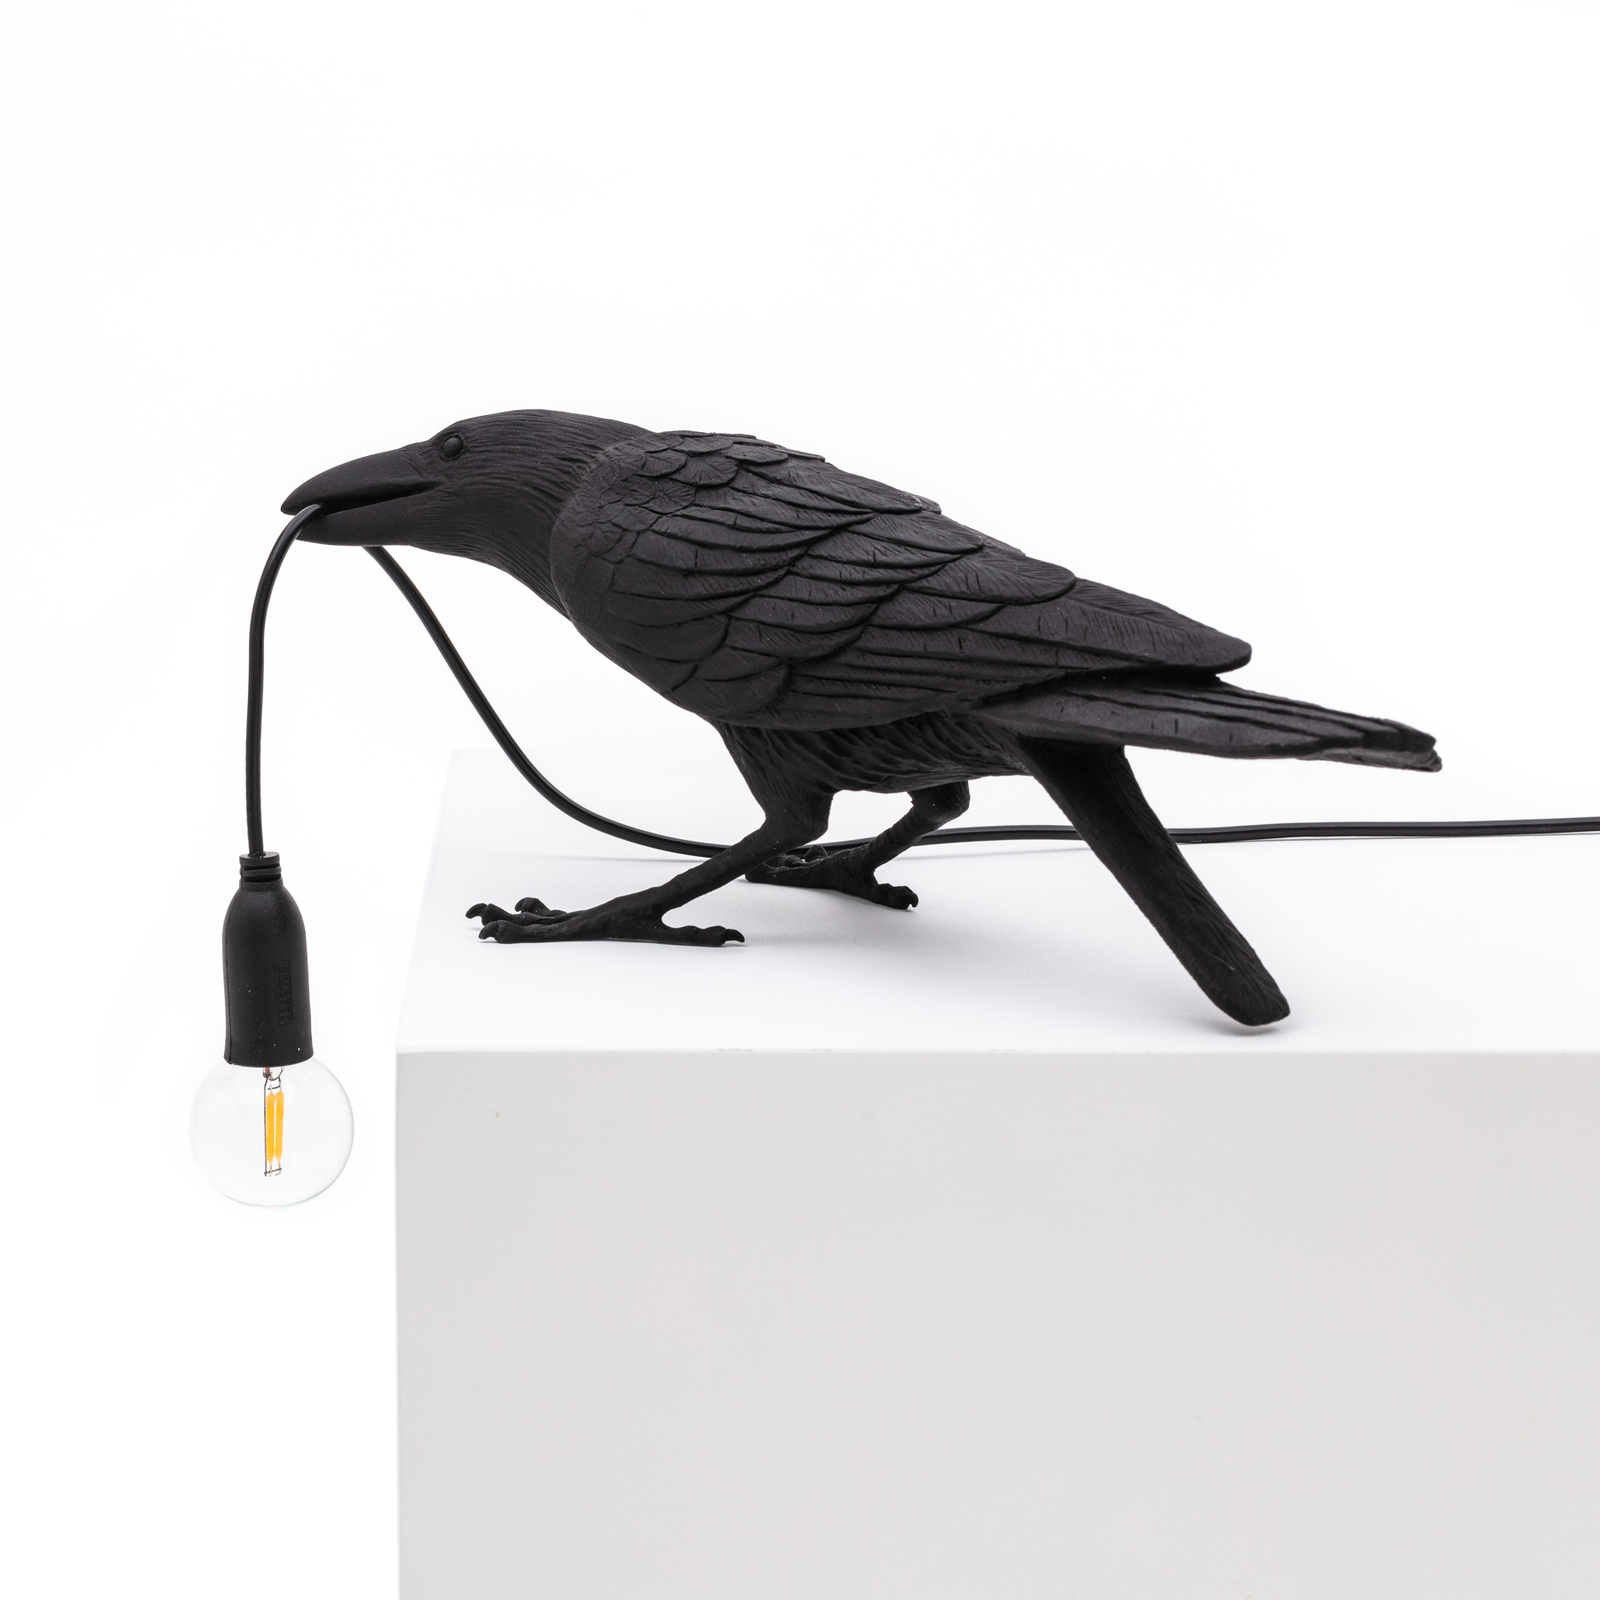 LED decoratie-terraslamp Bird Lamp spelend zwart